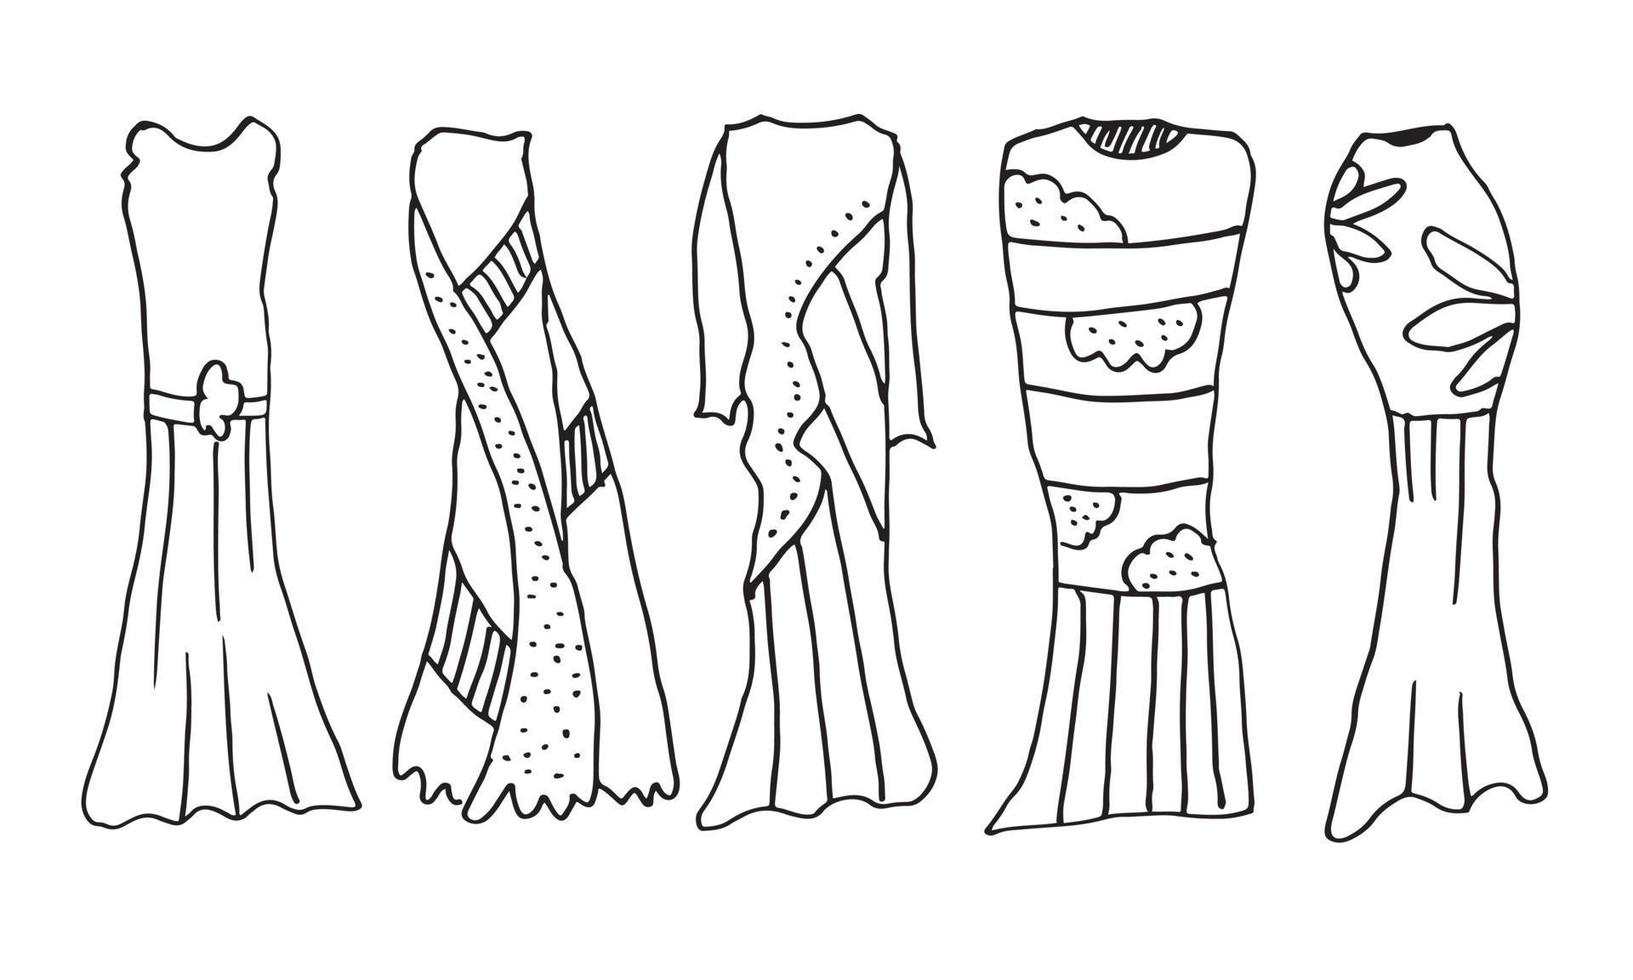 Doodle vector ropa de mujer dibujada a mano sobre fondo blanco.